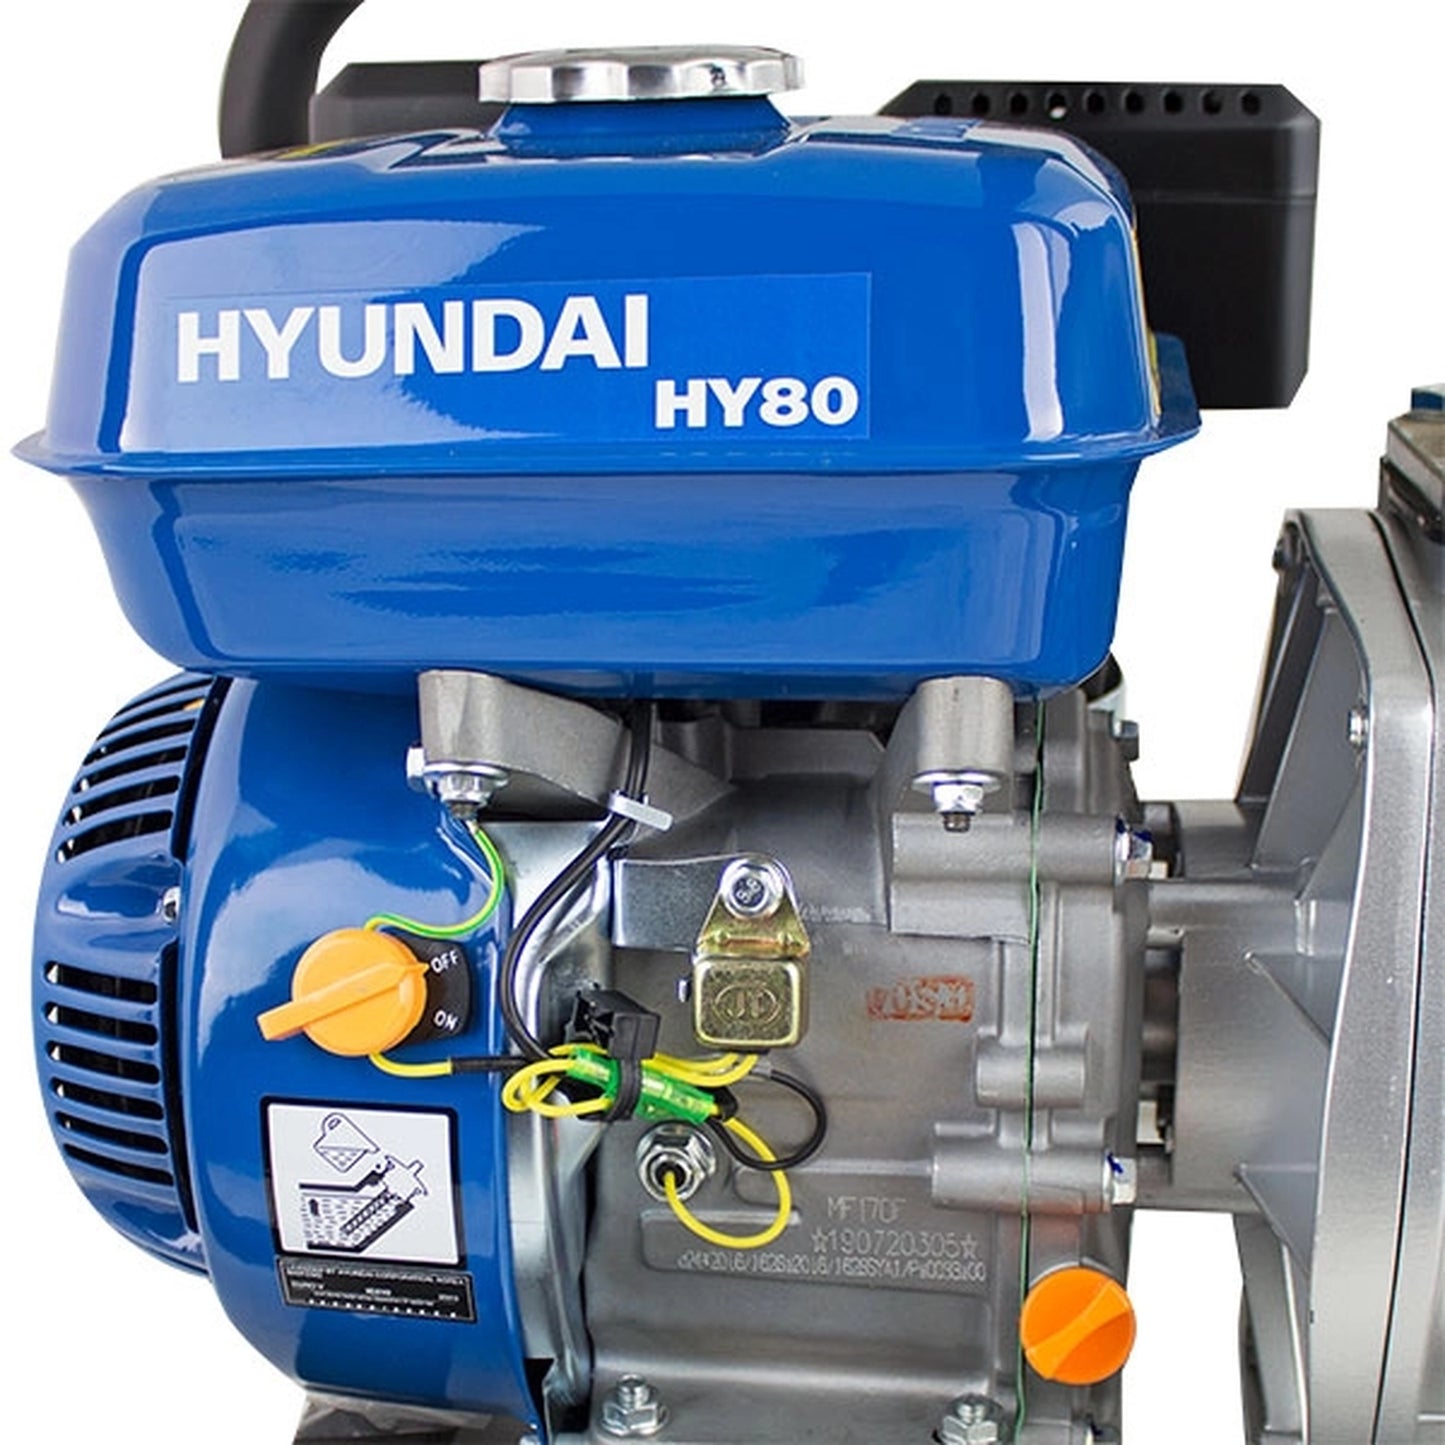 Hyundai HY80 Professional Petrol Water Pump 212cc 6.5hp